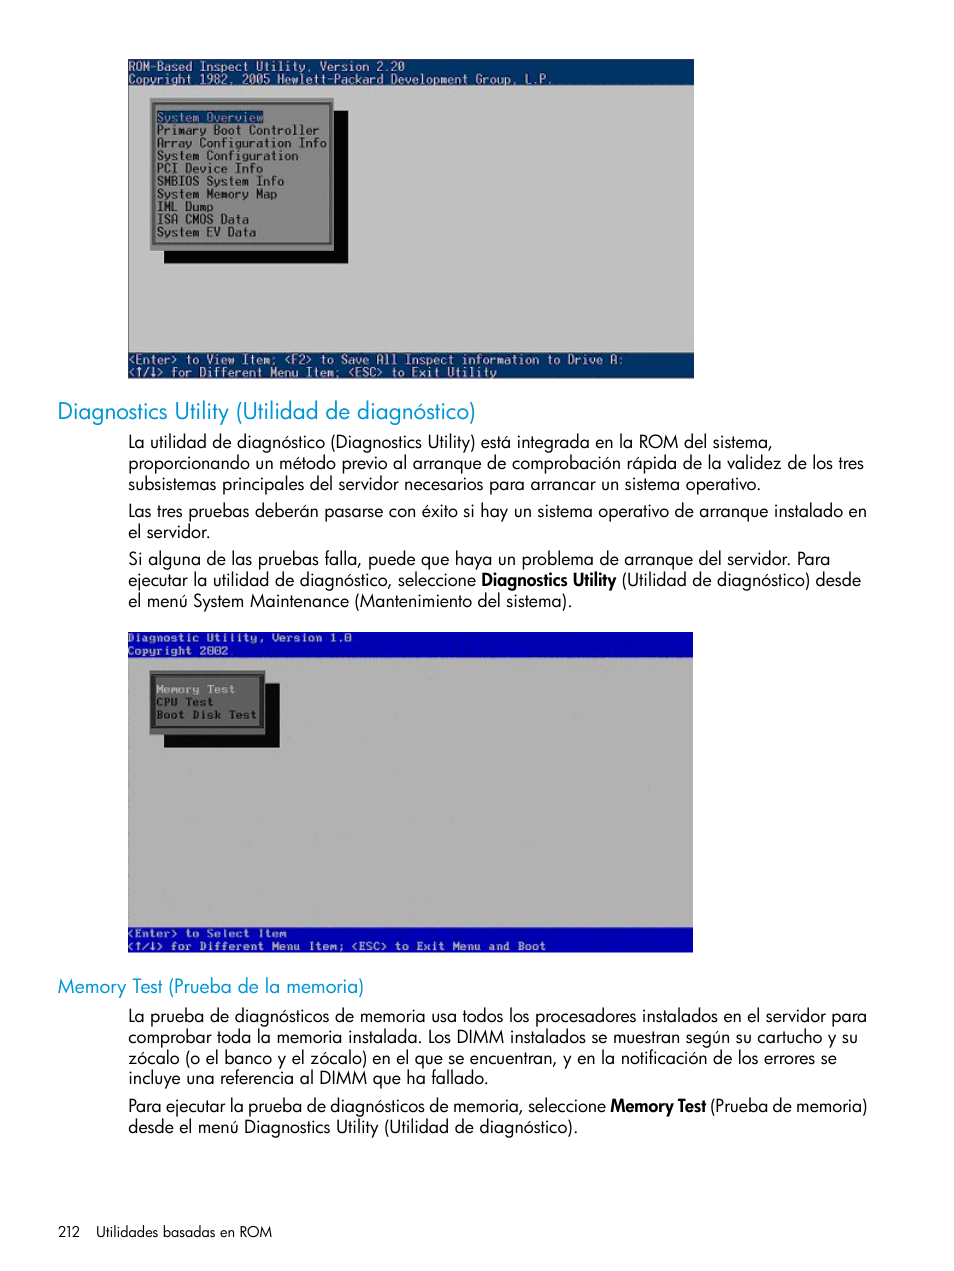 Diagnostics utility (utilidad de diagnóstico), Memory test (prueba de la memoria) | HP ROM-Based Setup Utility (Guía de usuario) Manual del usuario | Página 212 / 229